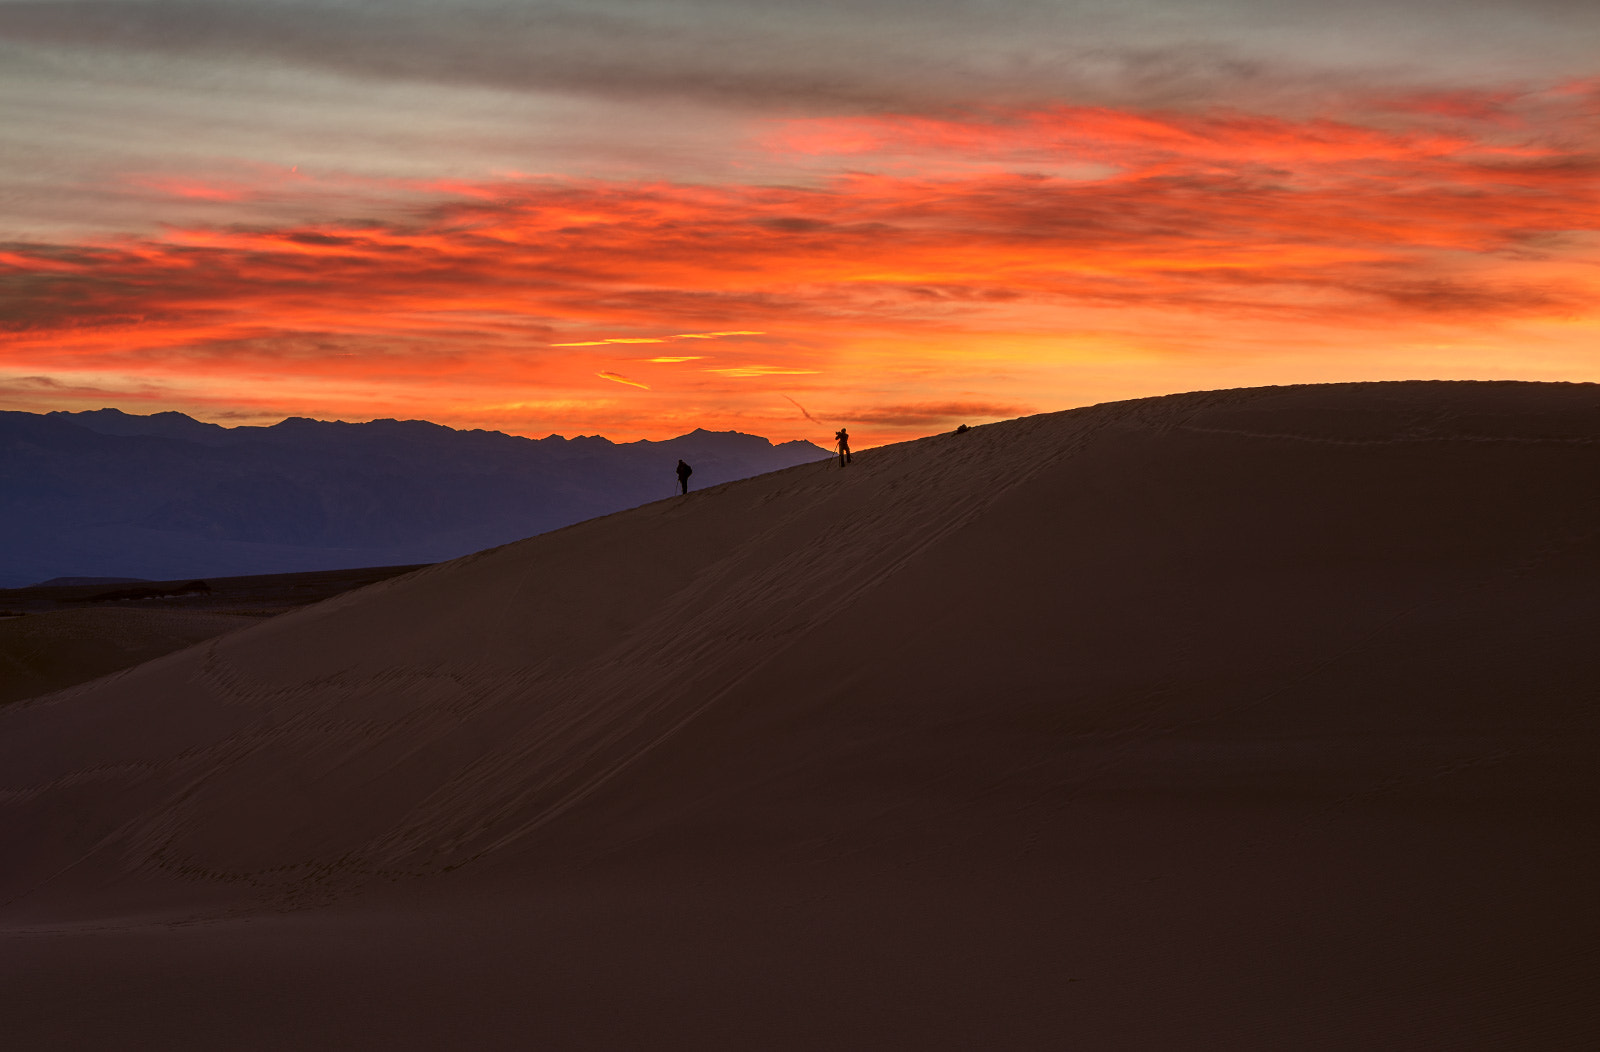 Nikon D600 + AF Nikkor 70-210mm f/4-5.6D sample photo. Mesquite dunes sunrise photography